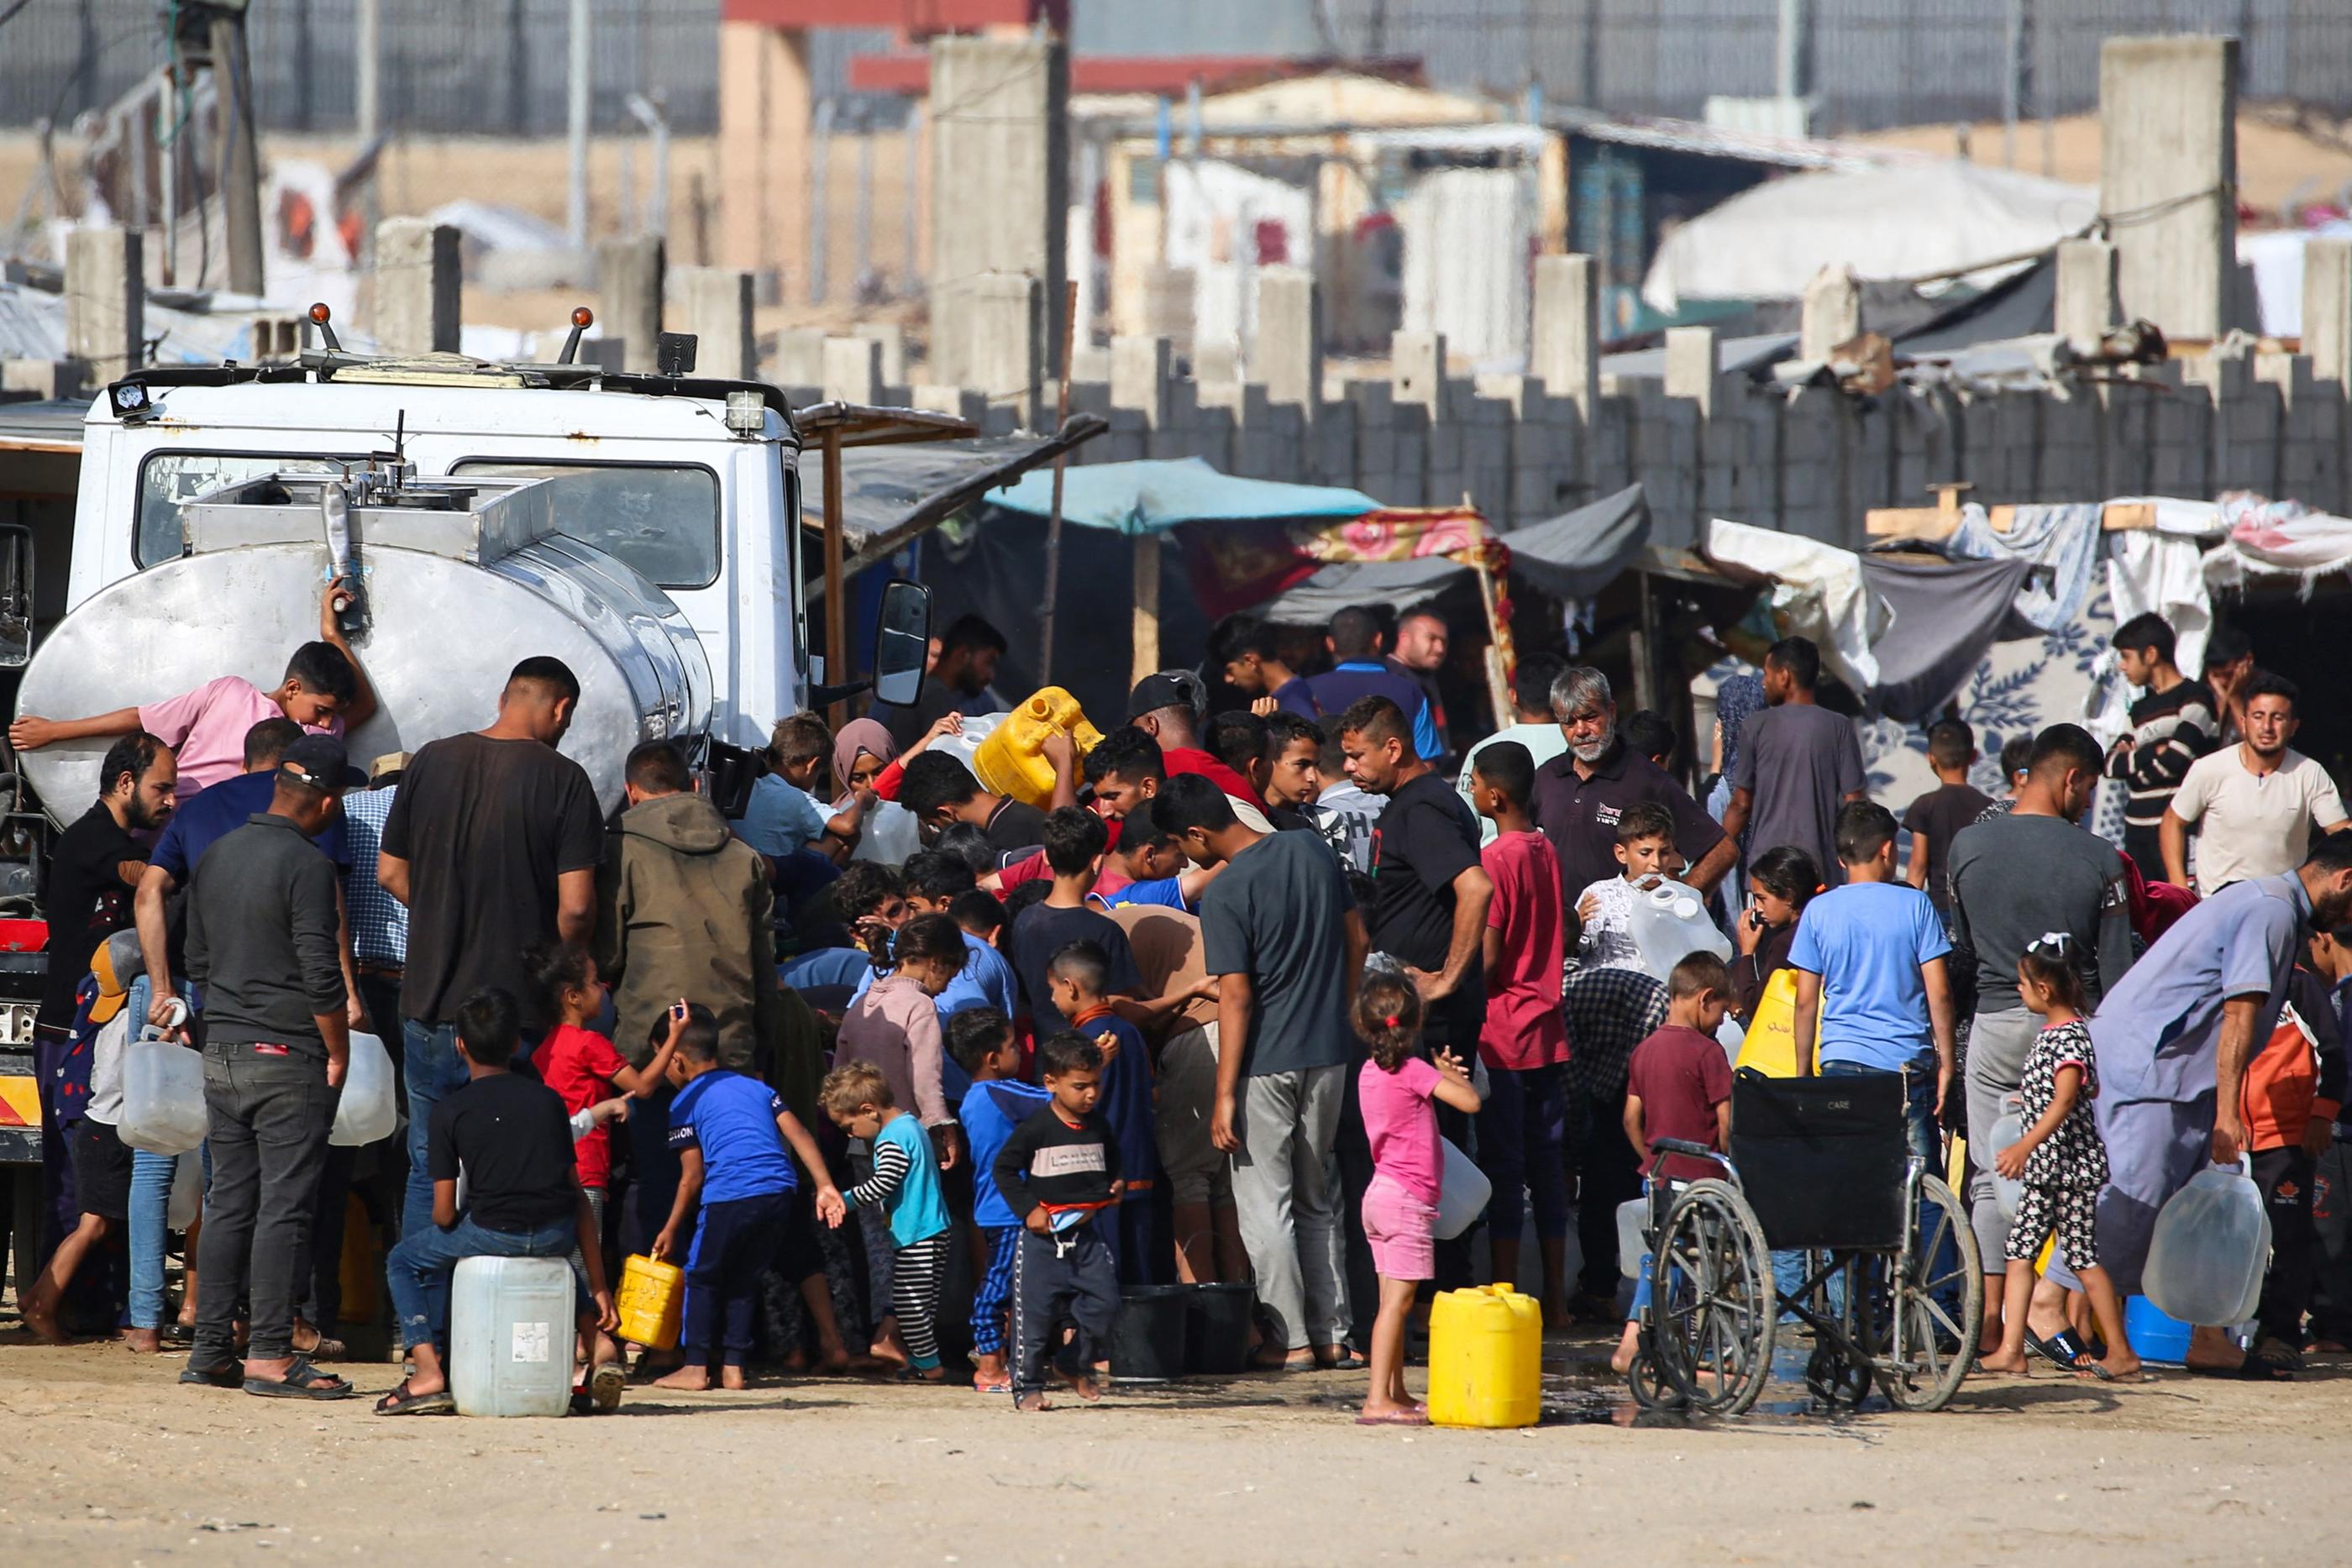 Le conditions de vie sont de plus en plus difficiles pour les habitants de Gaza. AFP